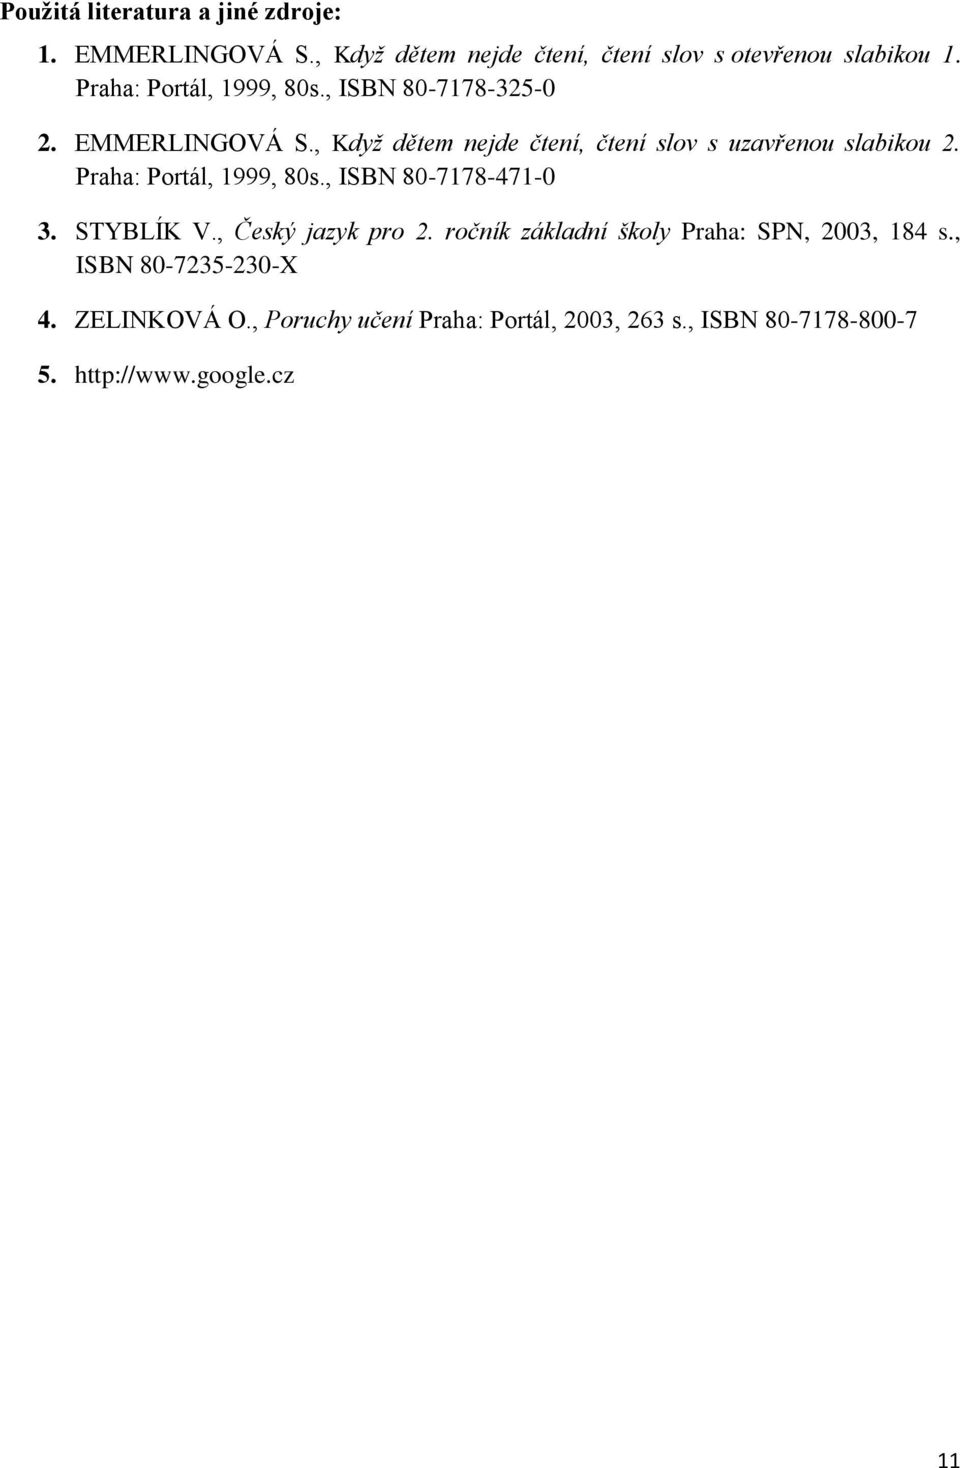 , Když dětem nejde čtení, čtení slov s uzavřenou slabikou 2. Praha: Portál, 1999, 80s., ISBN 80-7178-471-0 3. STYBLÍK V.